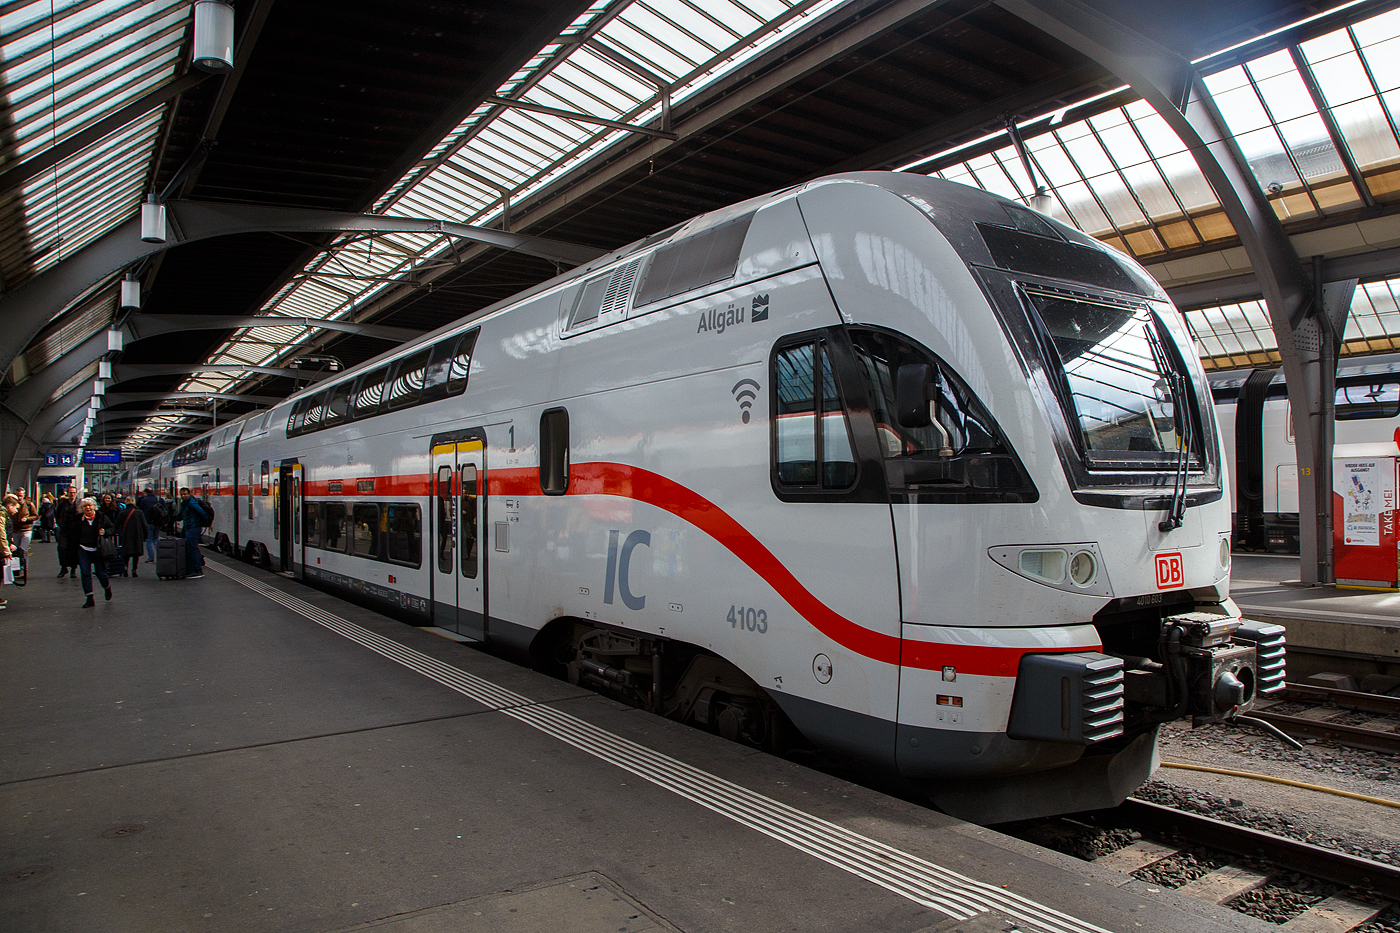 Der sechsteilige Stadler KISS 4010 103 (93 85 4010 103-8 CH-DB ff)  IC2 4103  Allgu  der DB Fernverkehr AG (ein ex Westbahn KISS) hat als IC 485 von Singen(Hohentwiel) am 21.03.2023 Zrich HB erreicht.

 KISS  - das heit: Komfortabler Innovativer Spurtstarker S-Bahn-Zug.

Nicht nur die DB Regio AG setzt auf die  KISS -Doppelstockzge des Schweizer Herstellers Stadler Rail bzw. Stadler Pankow, auch DB Fernverkehr erweitert seine Intercity 2-Flotte durch den Kauf von 17 hochwertigen gebrauchten Doppelstockzgen dieses Typs, die bisher bei der sterreichischen Westbahn im Einsatz waren. Die Fahrzeuge sind grtenteils erst zwei Jahre alt und haben bei den Kunden in sterreich hchste Zufriedenheitswerte erreicht.

Ursprnglich wurde das Fahrzeugkonzept fr S-Bahnen entwickelt. Lngst ist die KISS-Plattform aber weiterentwickelt worden fr schnelle Regional-Express-Linien und es gibt sogar eine Fernverkehrsvariante mit sehr komfortabler Innenausstattung und einer Druckertchtigung fr das Befahren von Tunnels mit 200 km/h und einem entgegenkommenden 300 km/h-Zug. Mit einer S-Bahn hat das nur noch in einer Disziplin zu tun: Nmlich eine enorm gute Beschleunigung!

Was knnen diese Neuerwerbungen:
Die hochwertigen Kiss-Zge, die bisher bei der Westbahn fuhren, sind bis zu 200 km/h schnell und bestehen aus vier bzw. sechs Wagen. Nach den Anpassungen fr den Intercity-Einsatz verfgen sie ber rund 300 bzw. 470 Sitzpltze. Auf zwei Etagen gibt es komfortable Sitzlandschaften und viel Bewegungsfreiheit. Die Fahrzeuge sind mit WLAN und Steckdosen (je Sitzplatz eine) ausgestattet sowie einem modernen Fahrgastinformationssystem. Auch ein gastronomischer Service mit heien und kalten Getrnken, sen und herzhaften Snacks sowie frischen Baguettes ist vorgesehen: Unsere Gste werden die Wahl haben, ob sie sich am Platz bedienen lassen oder ob sie es sich in einem der beiden Cafbereiche gemtlich machen. Die vorhandenen Bereiche fr Reisende mit Mobilittseinschrnkungen, fr Gepck und Fahrrder werden entsprechend blicher DB-Standards sukzessive erweitert.

TECHNISCHE DATEN:
Erste Inbetriebnahme: Dezember 2022
Anzahl der Zge: 8 (7x 1. Bau Serie & 1x 2. Bau Serie)
Zuglnge: 150 m
Anzahl angetriebener Achsen: 8
Zugleergewicht: 316 t
Hchstgeschwindigkeit:200 km/h
Auslandseinsatz mglich: ja (A, CH)
Sitzpltze: 486 (inklusive 19 Klappsitze), davon 62 in 1. Klasse
Fahrradstellpltze: 8
Kinderwagenstellpltze: 2
